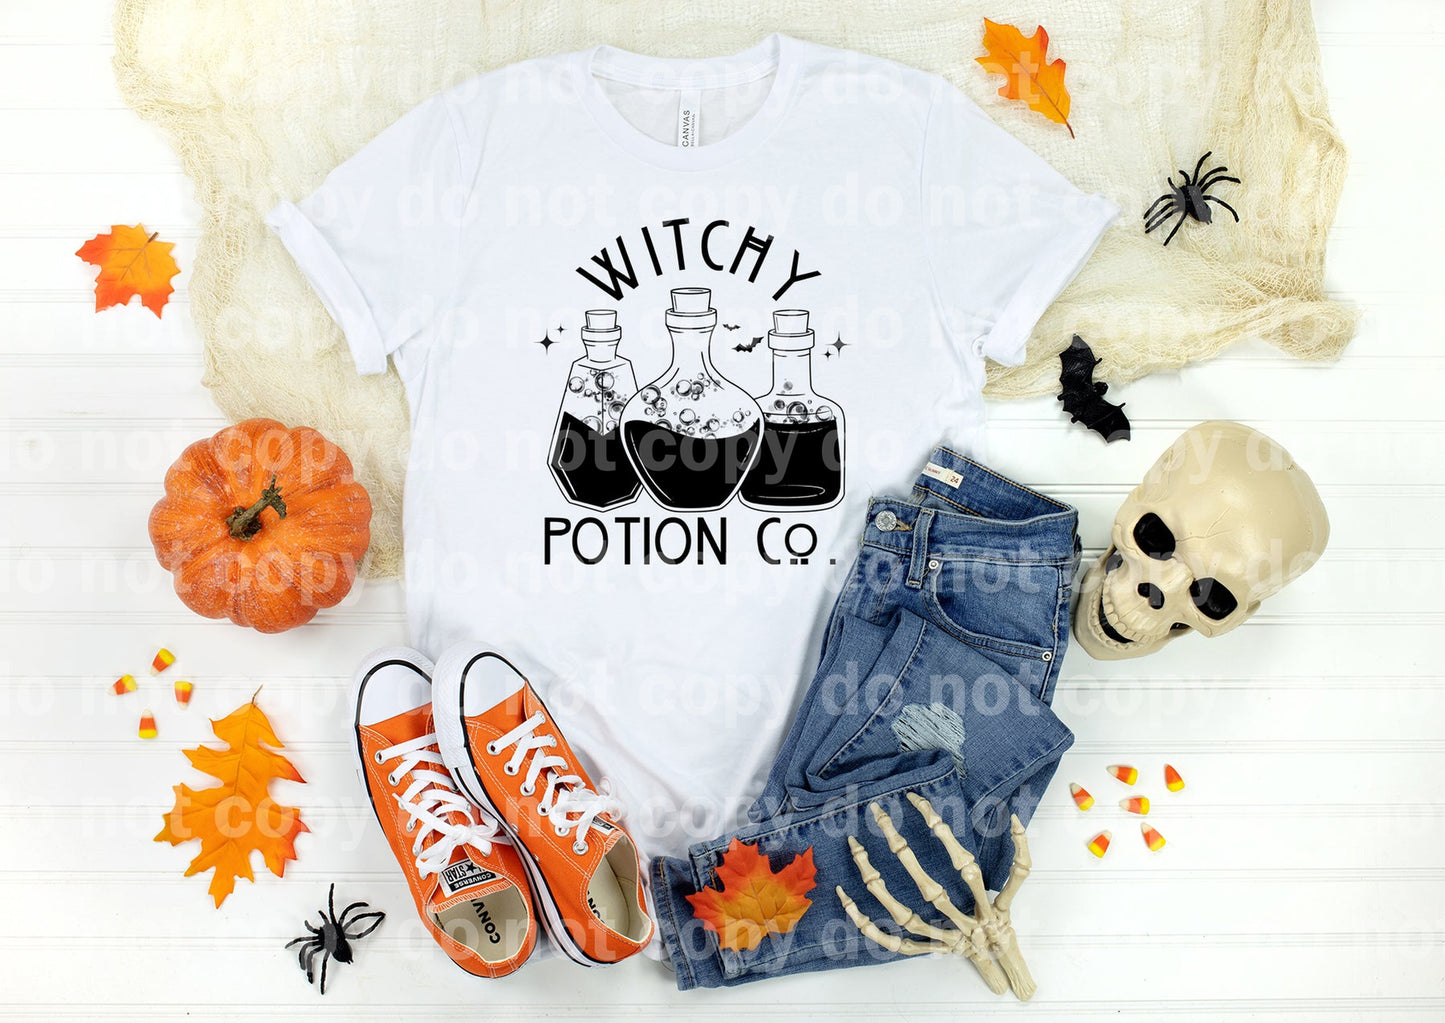 Witchy Potion Co. Impresión de ensueño a todo color/un color o impresión por sublimación